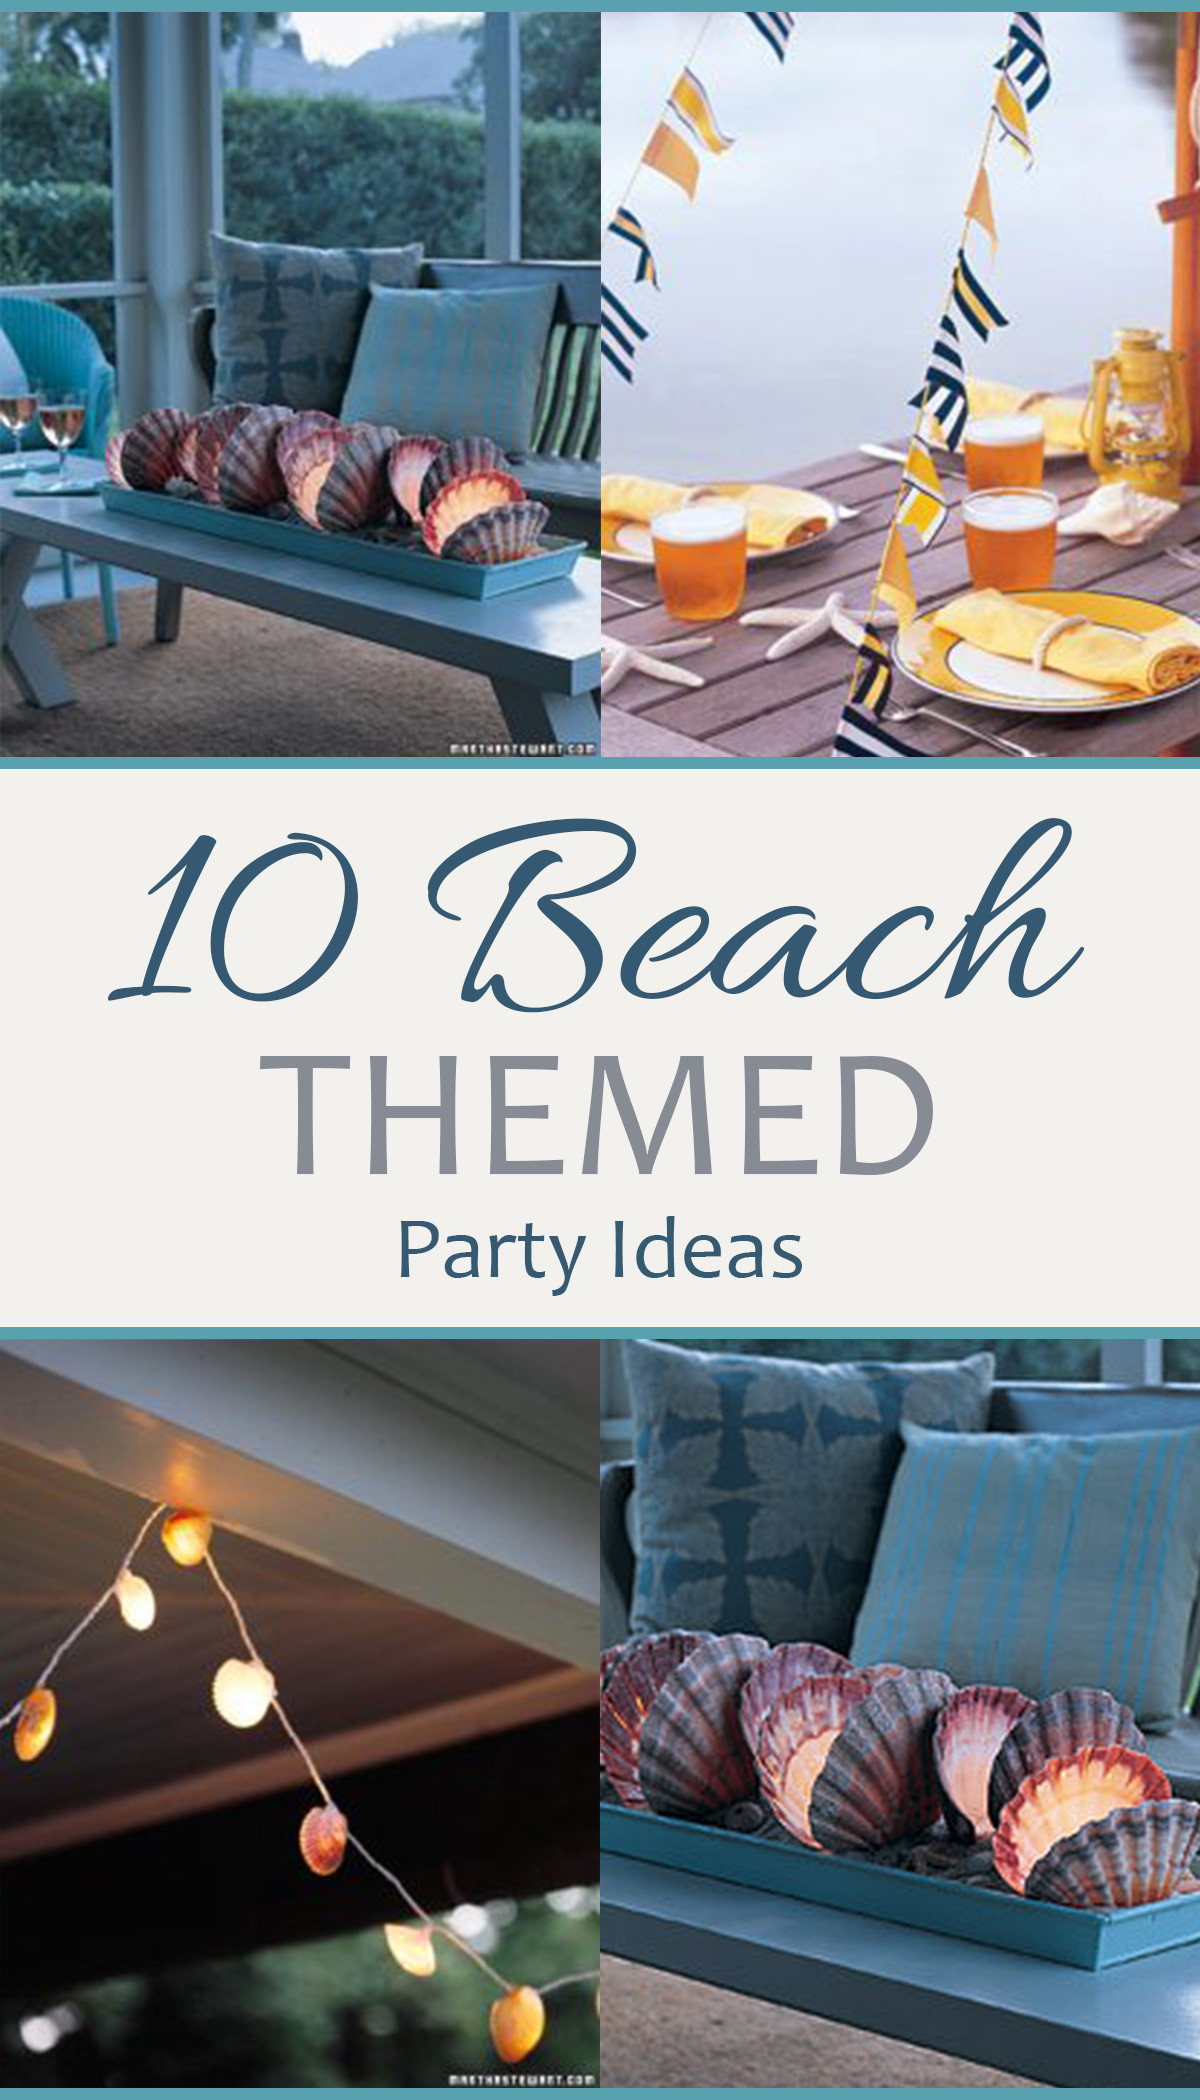 Beach Party Theme Ideas
 10 Beach Themed Party Ideas